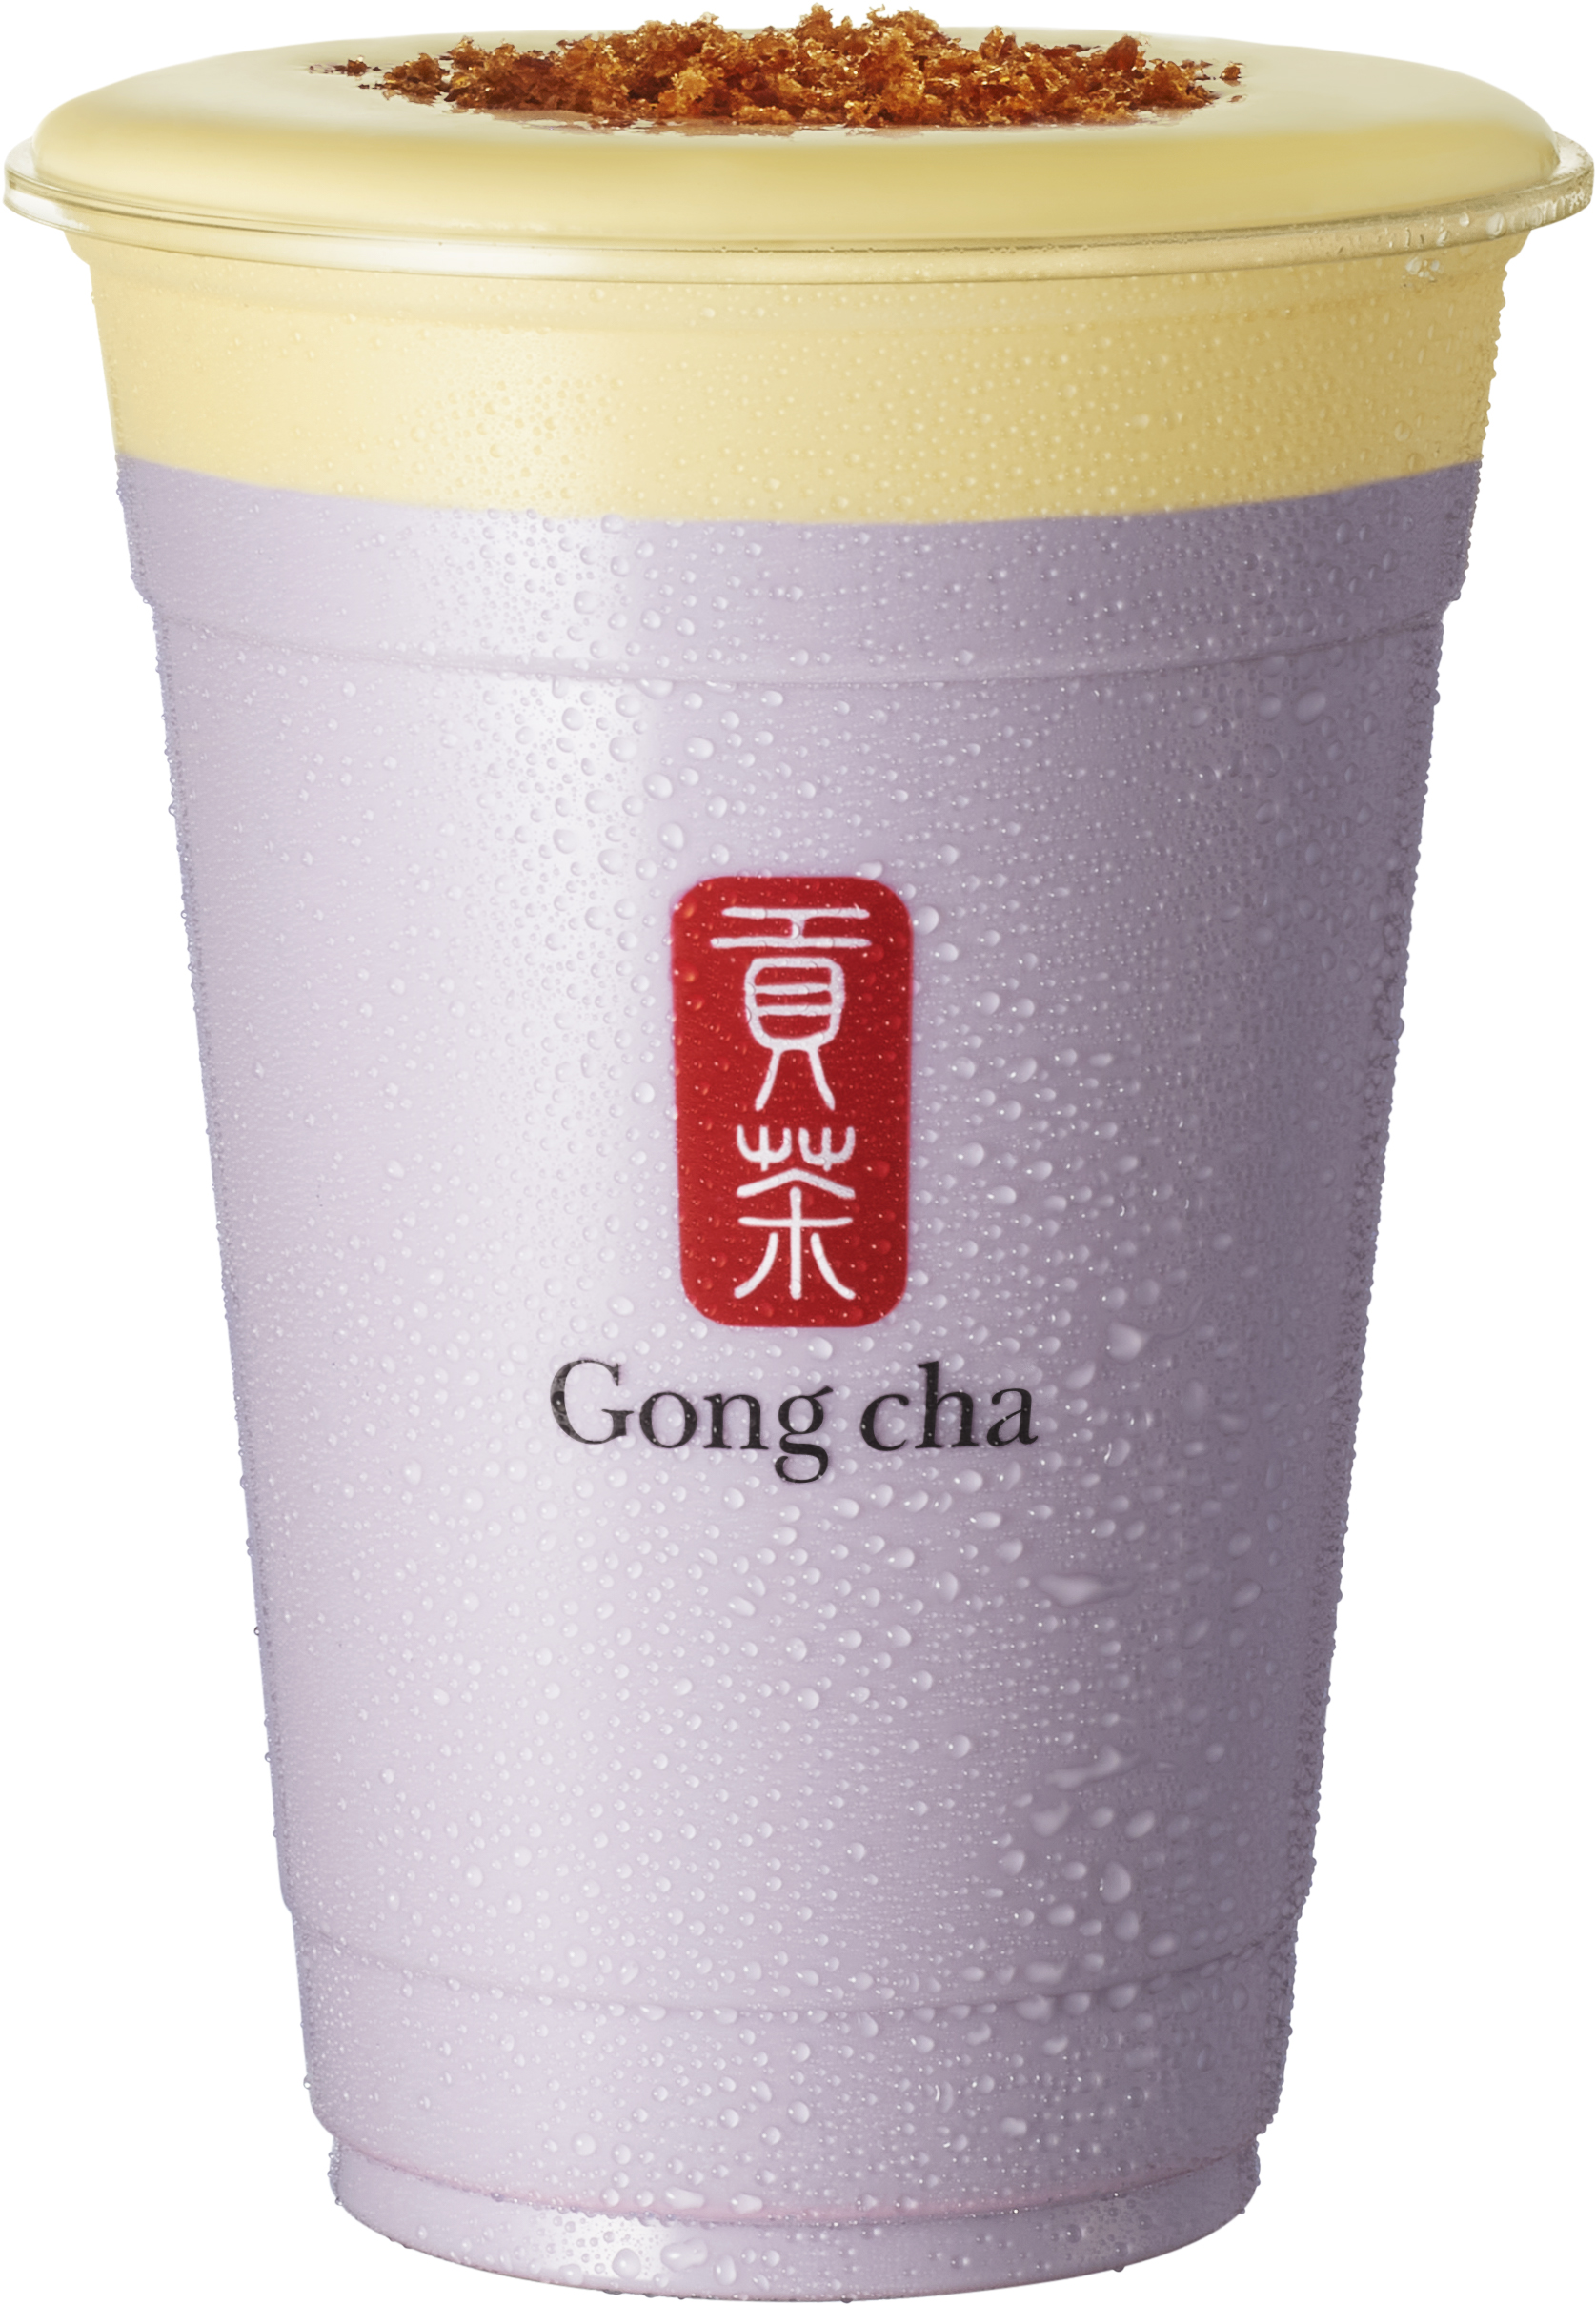 この秋、ゴンチャの新シリーズ発売！デザートのような味わい「Gong cha Tea Dessert」 第一弾は ”クレームブリュレ”のサブ画像3